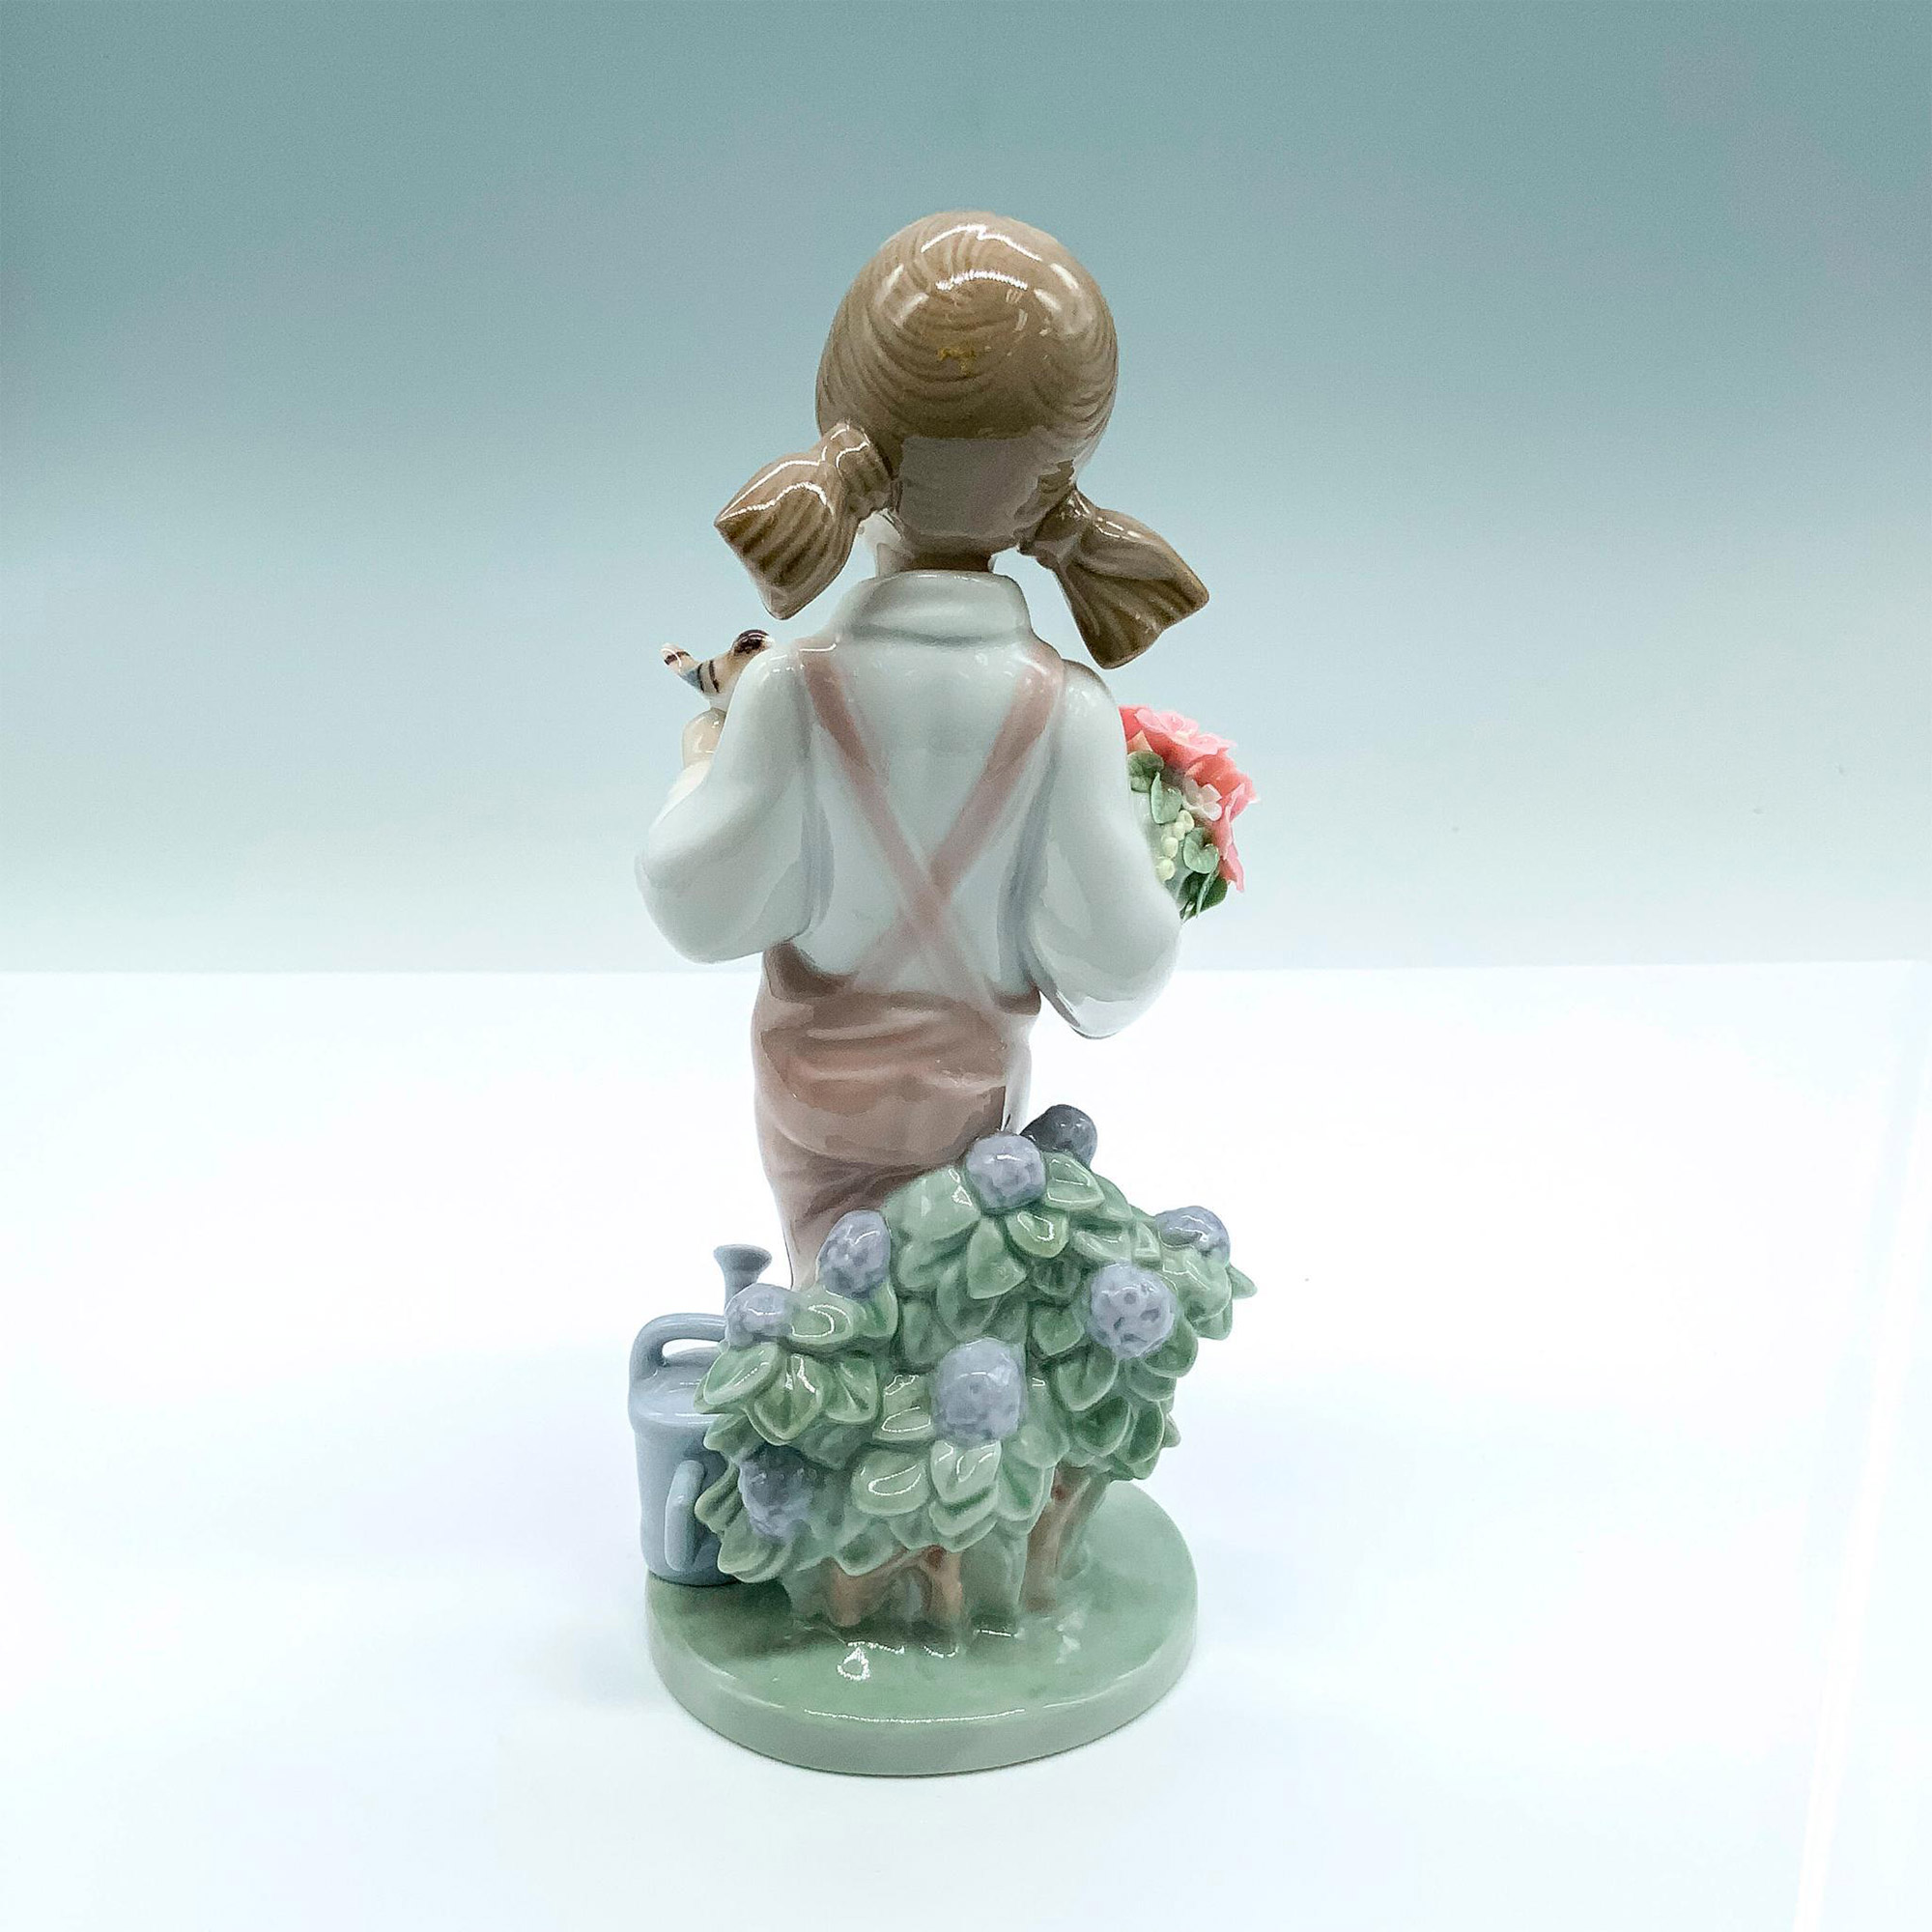 Spring 1005217 - Lladro Porcelain Figurine - Image 2 of 5